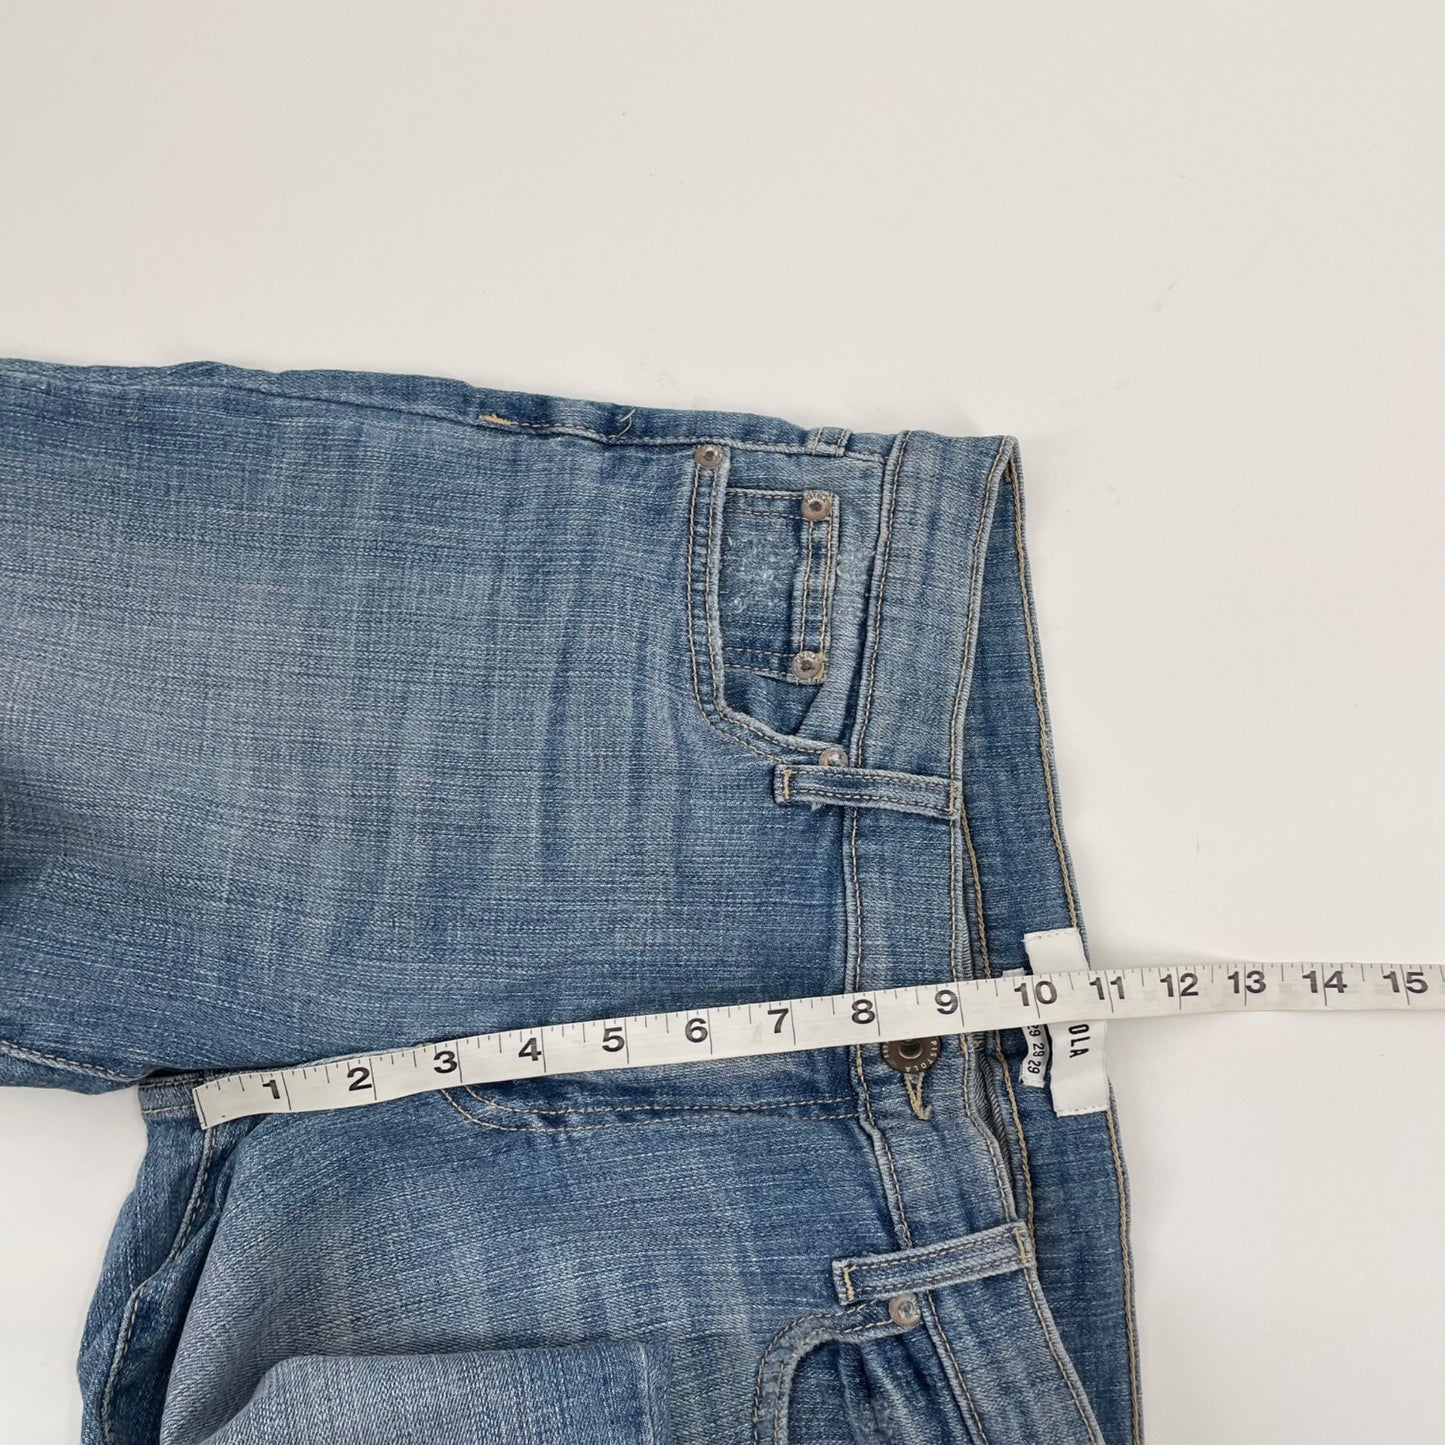 NWT Pistola Audrey Mid Rise Skinny Raw Hem Jeans Womens Size 29 Stretch Denim